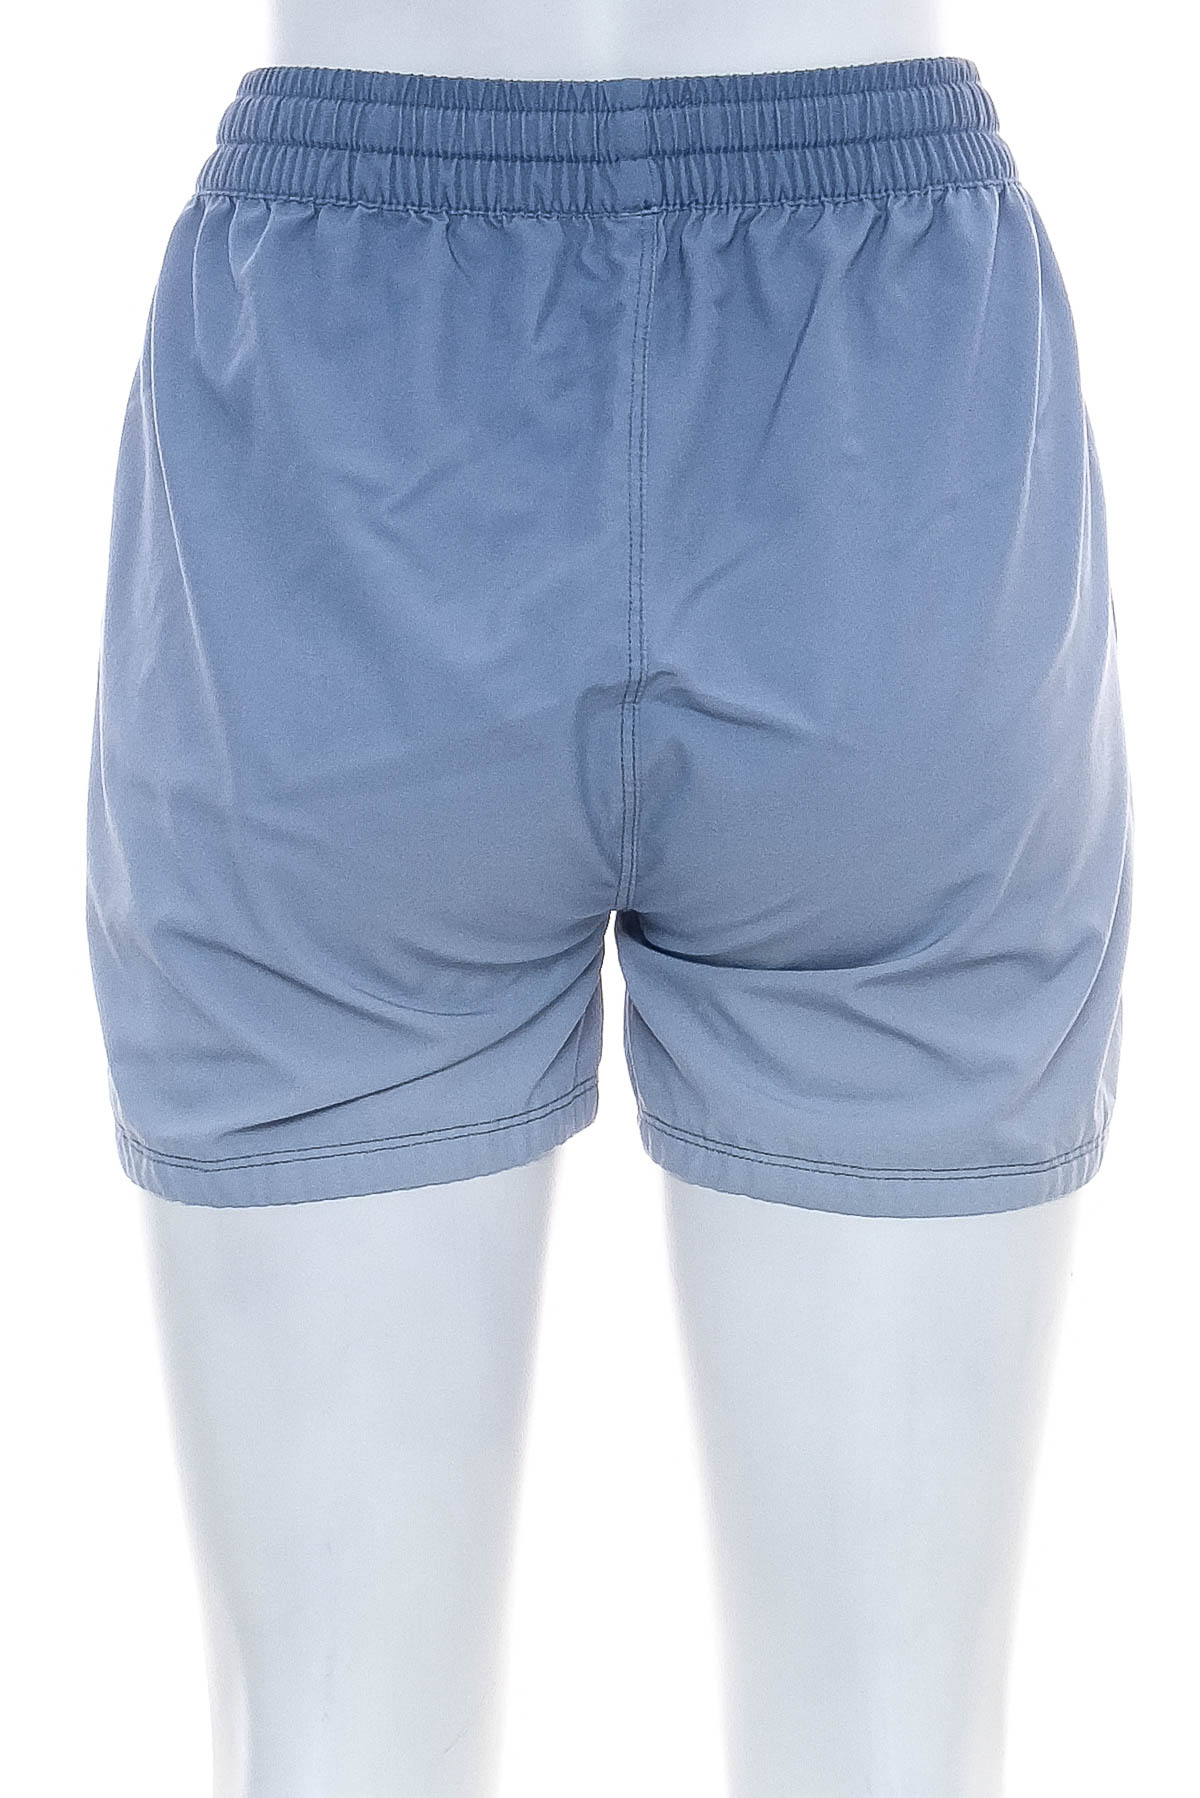 Women's shorts - LIV Outdoor - 1